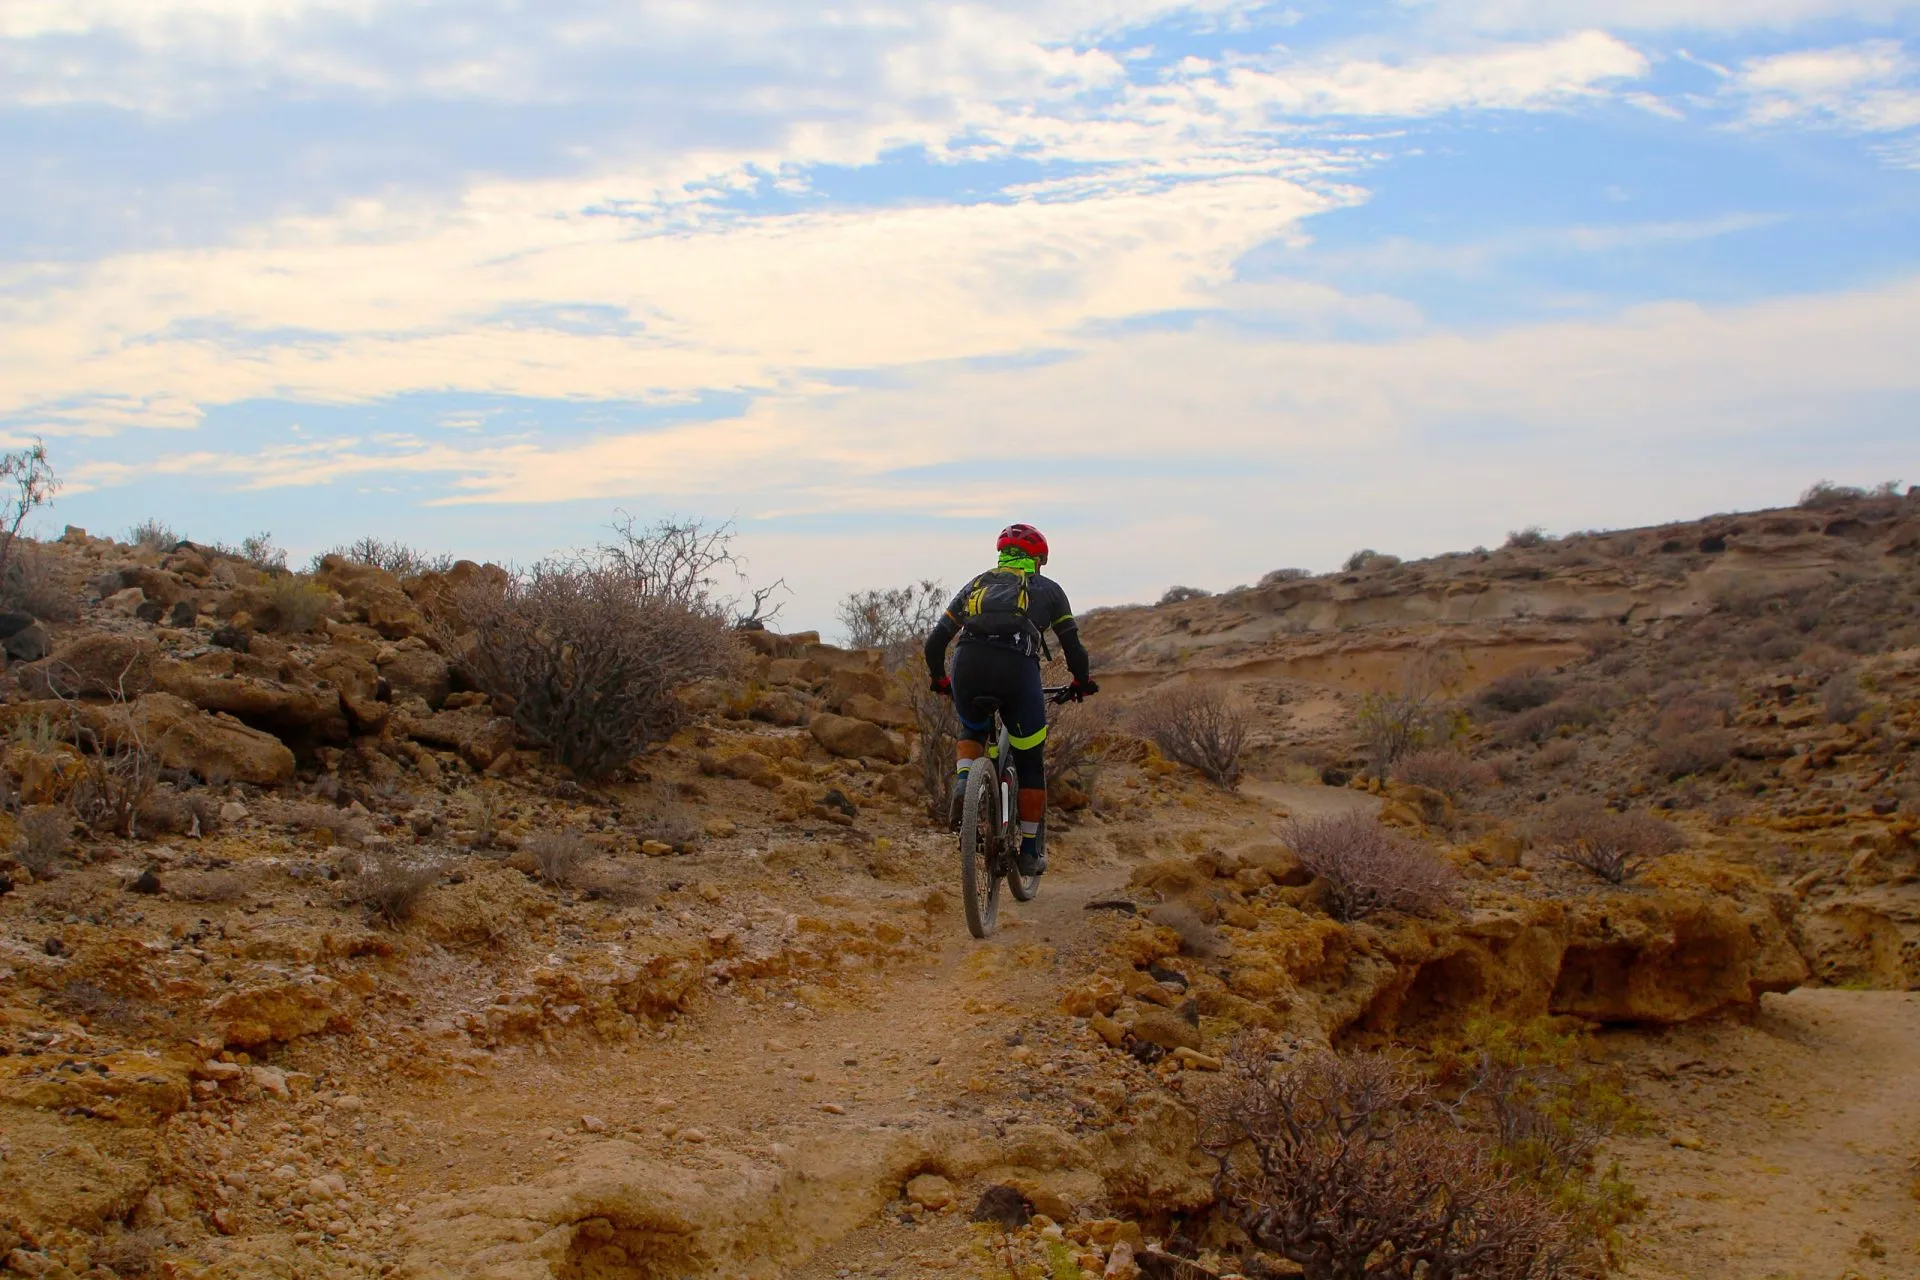 Terrengsykkel-syklist på single track i en tørr canyon (Tenerife, Spania)